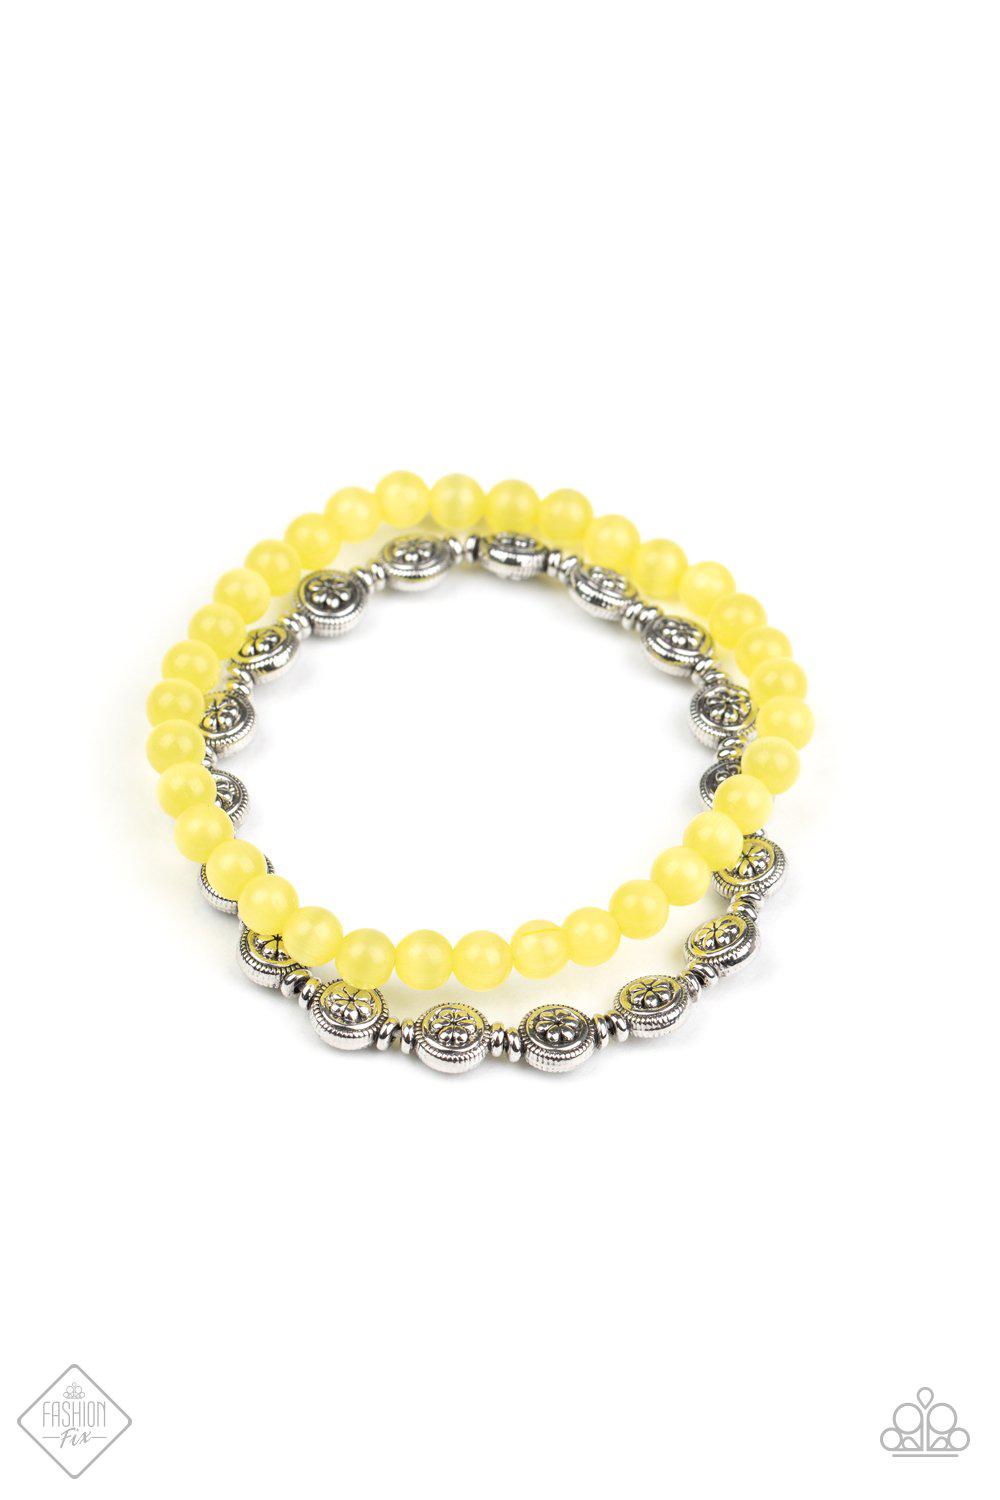 Dewy Dandelions Yellow Cat's Eye Bracelet - Paparazzi Accessories-CarasShop.com - $5 Jewelry by Cara Jewels